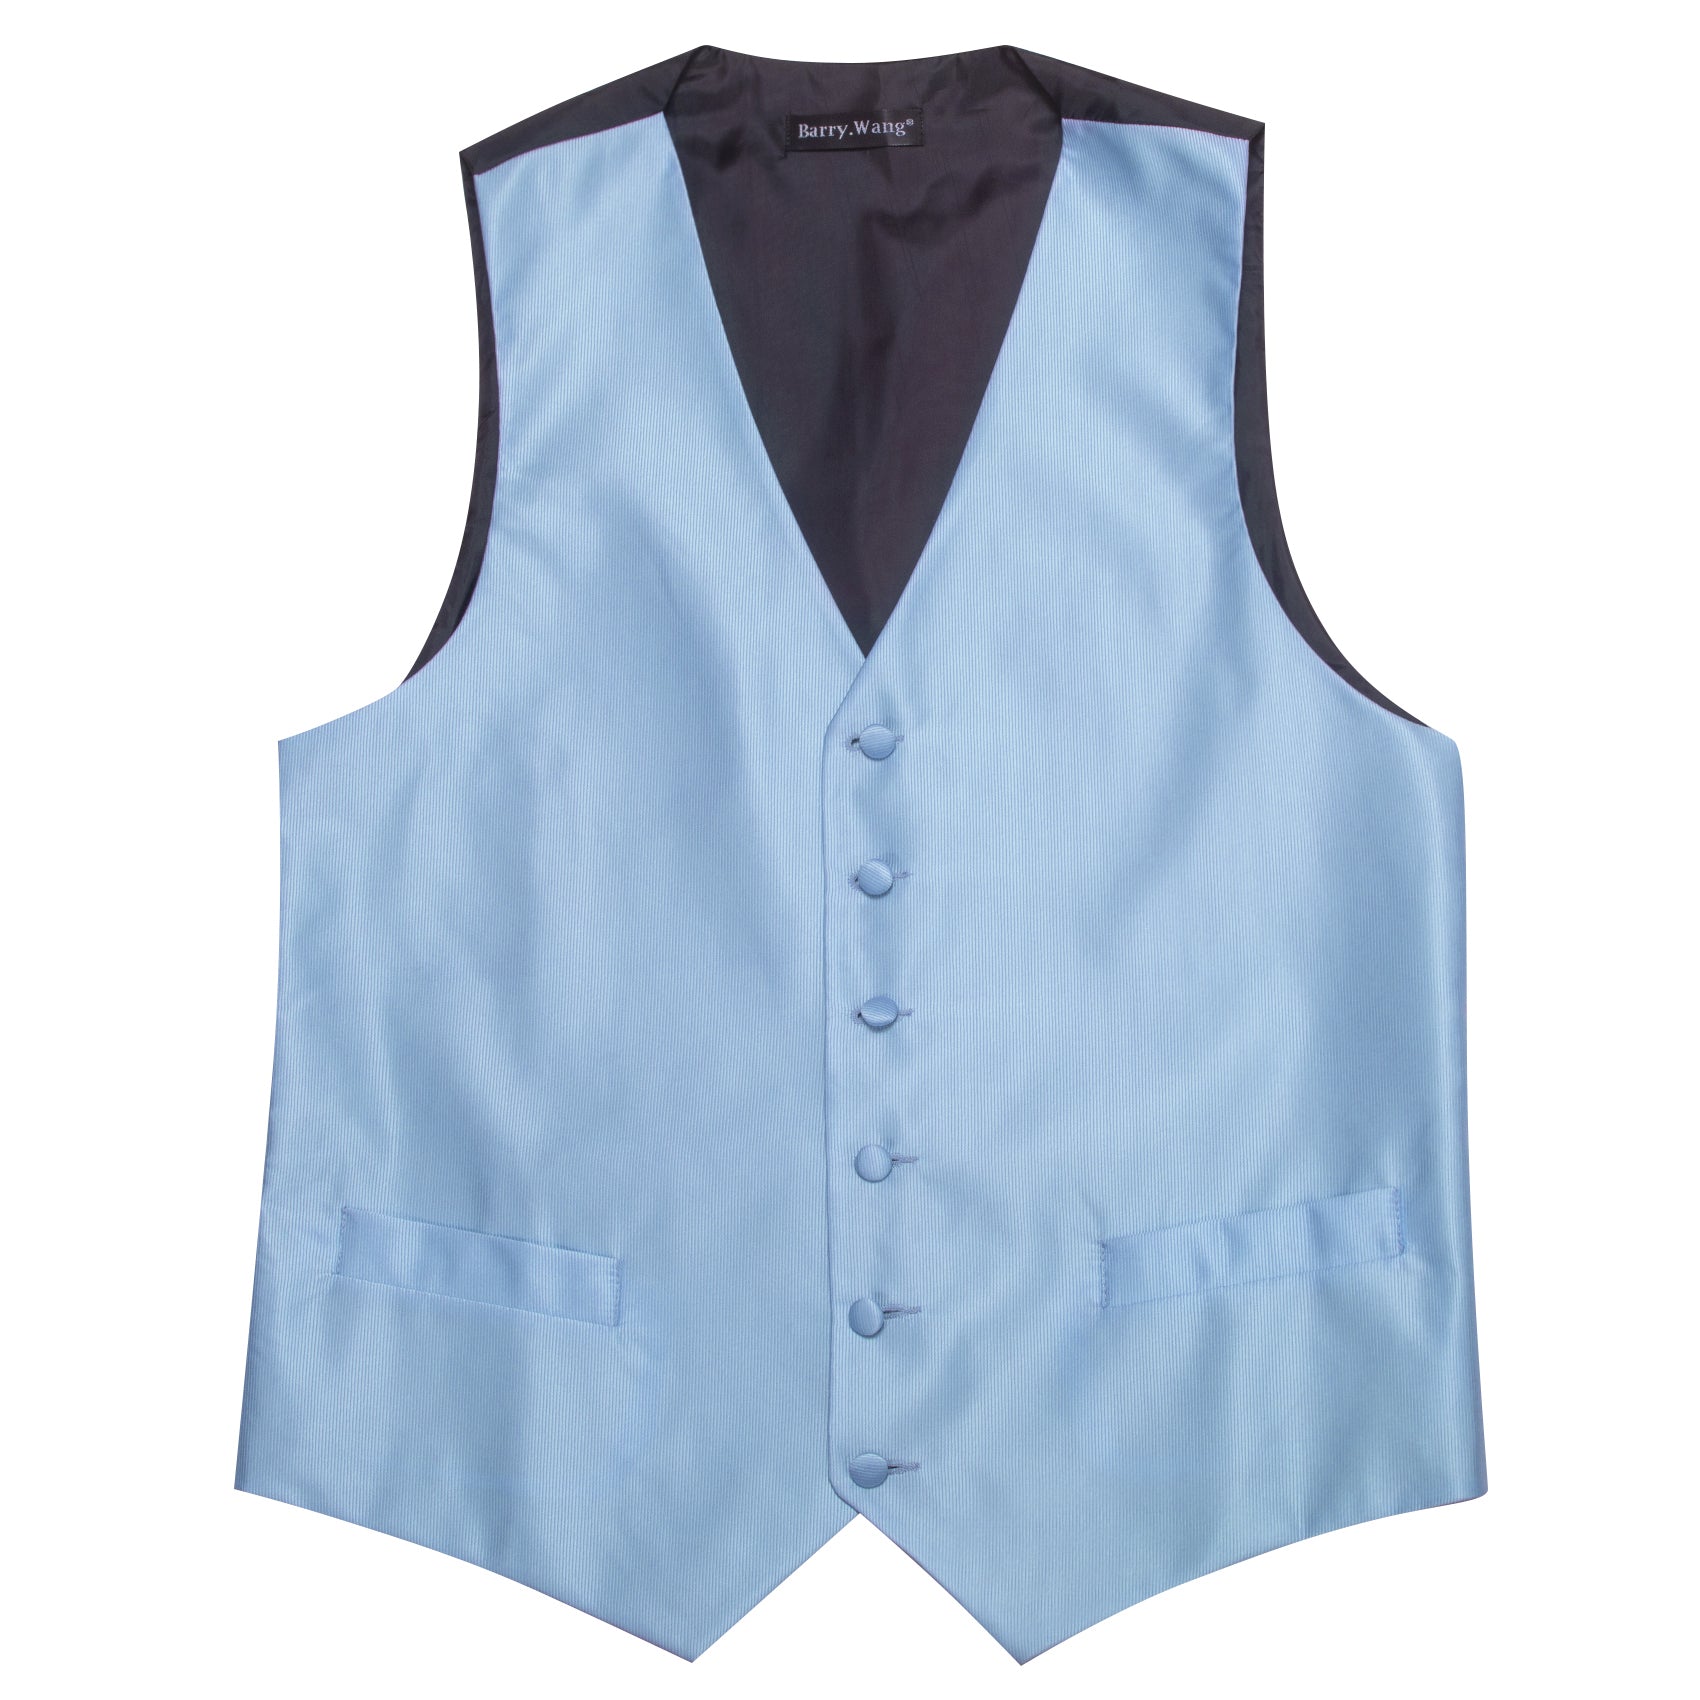 Pale Blue Solid Silk Vest Necktie Pocket Square Cufflinks Set